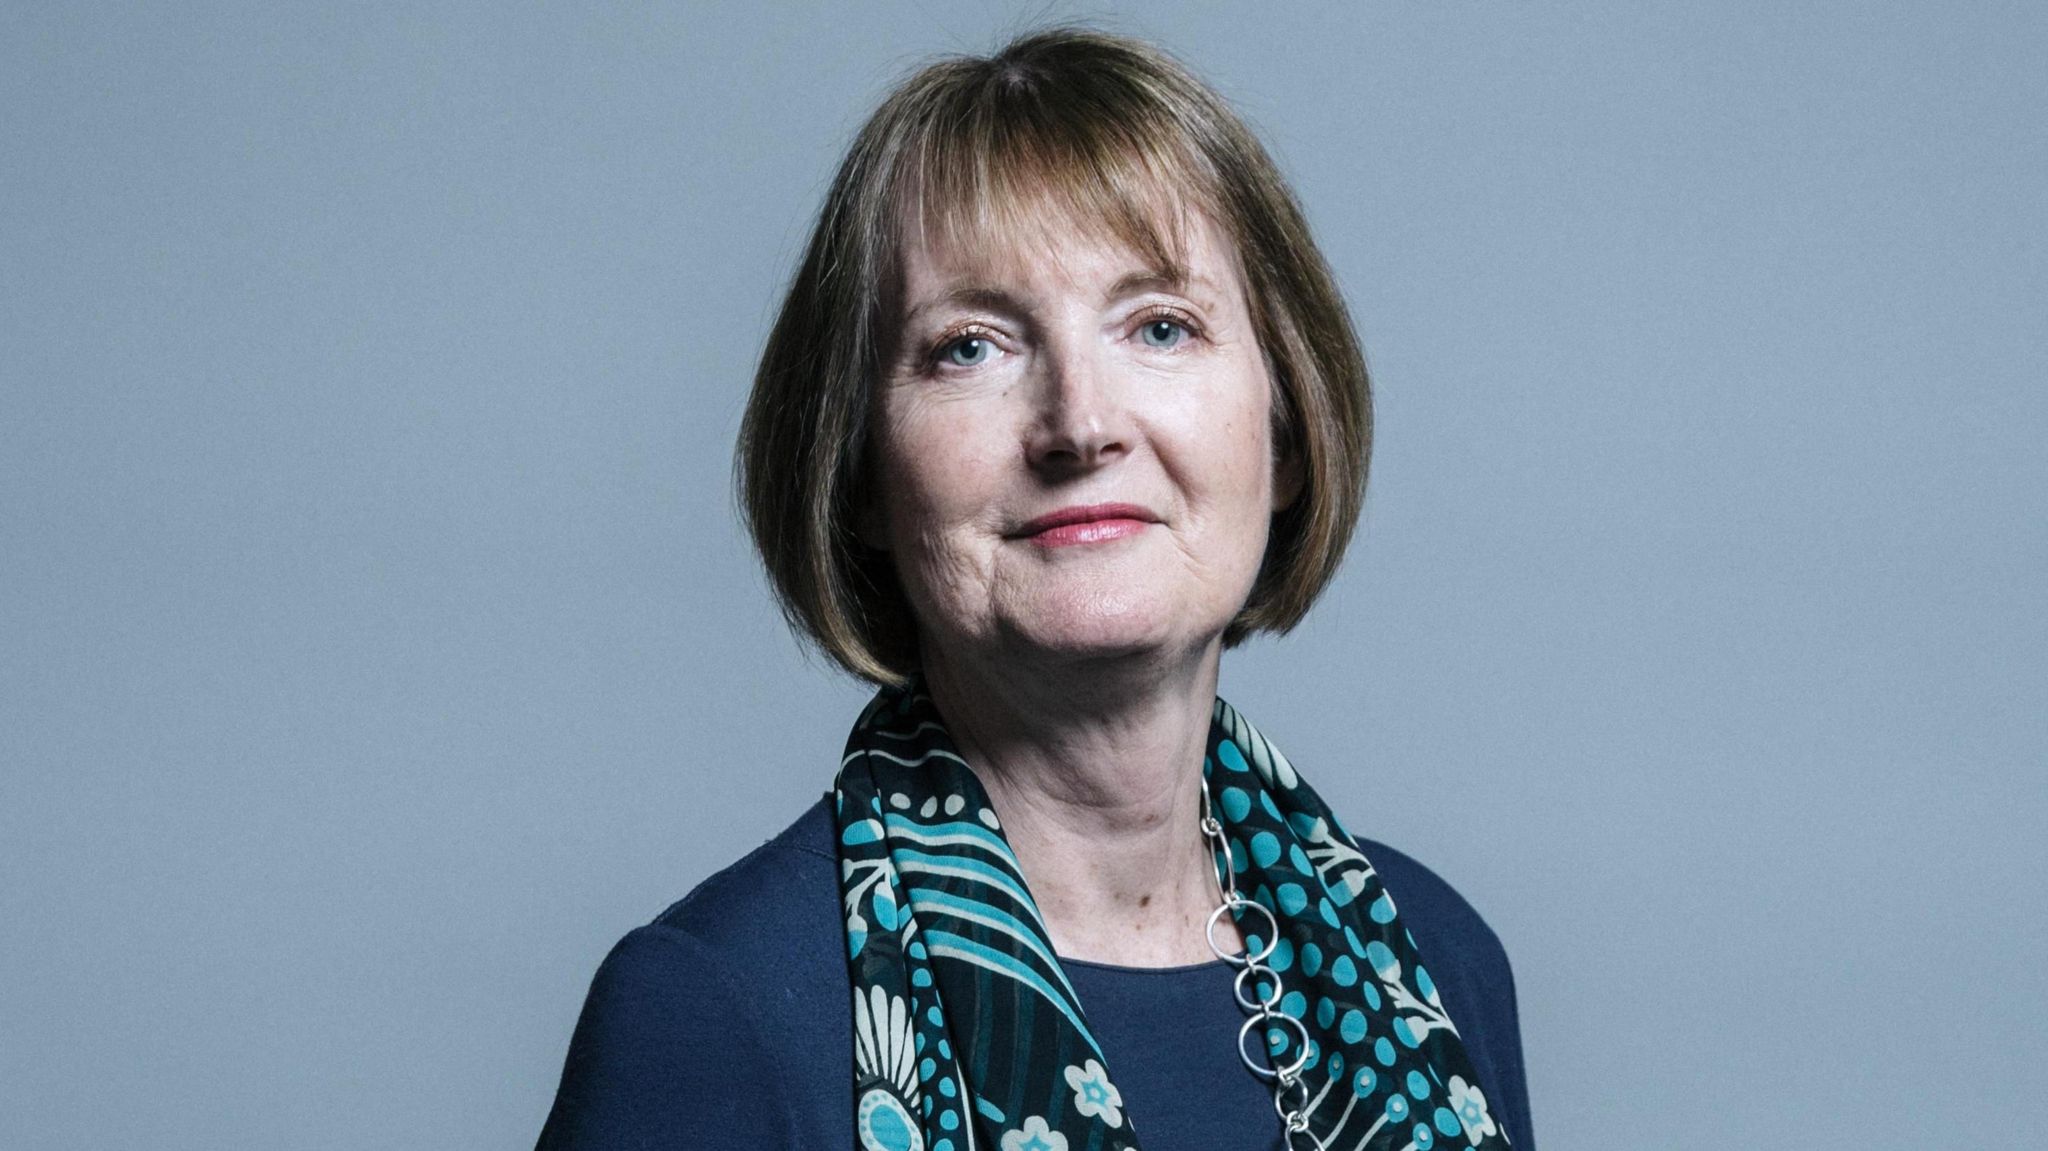 Harriet Harman MP portrait from 2017